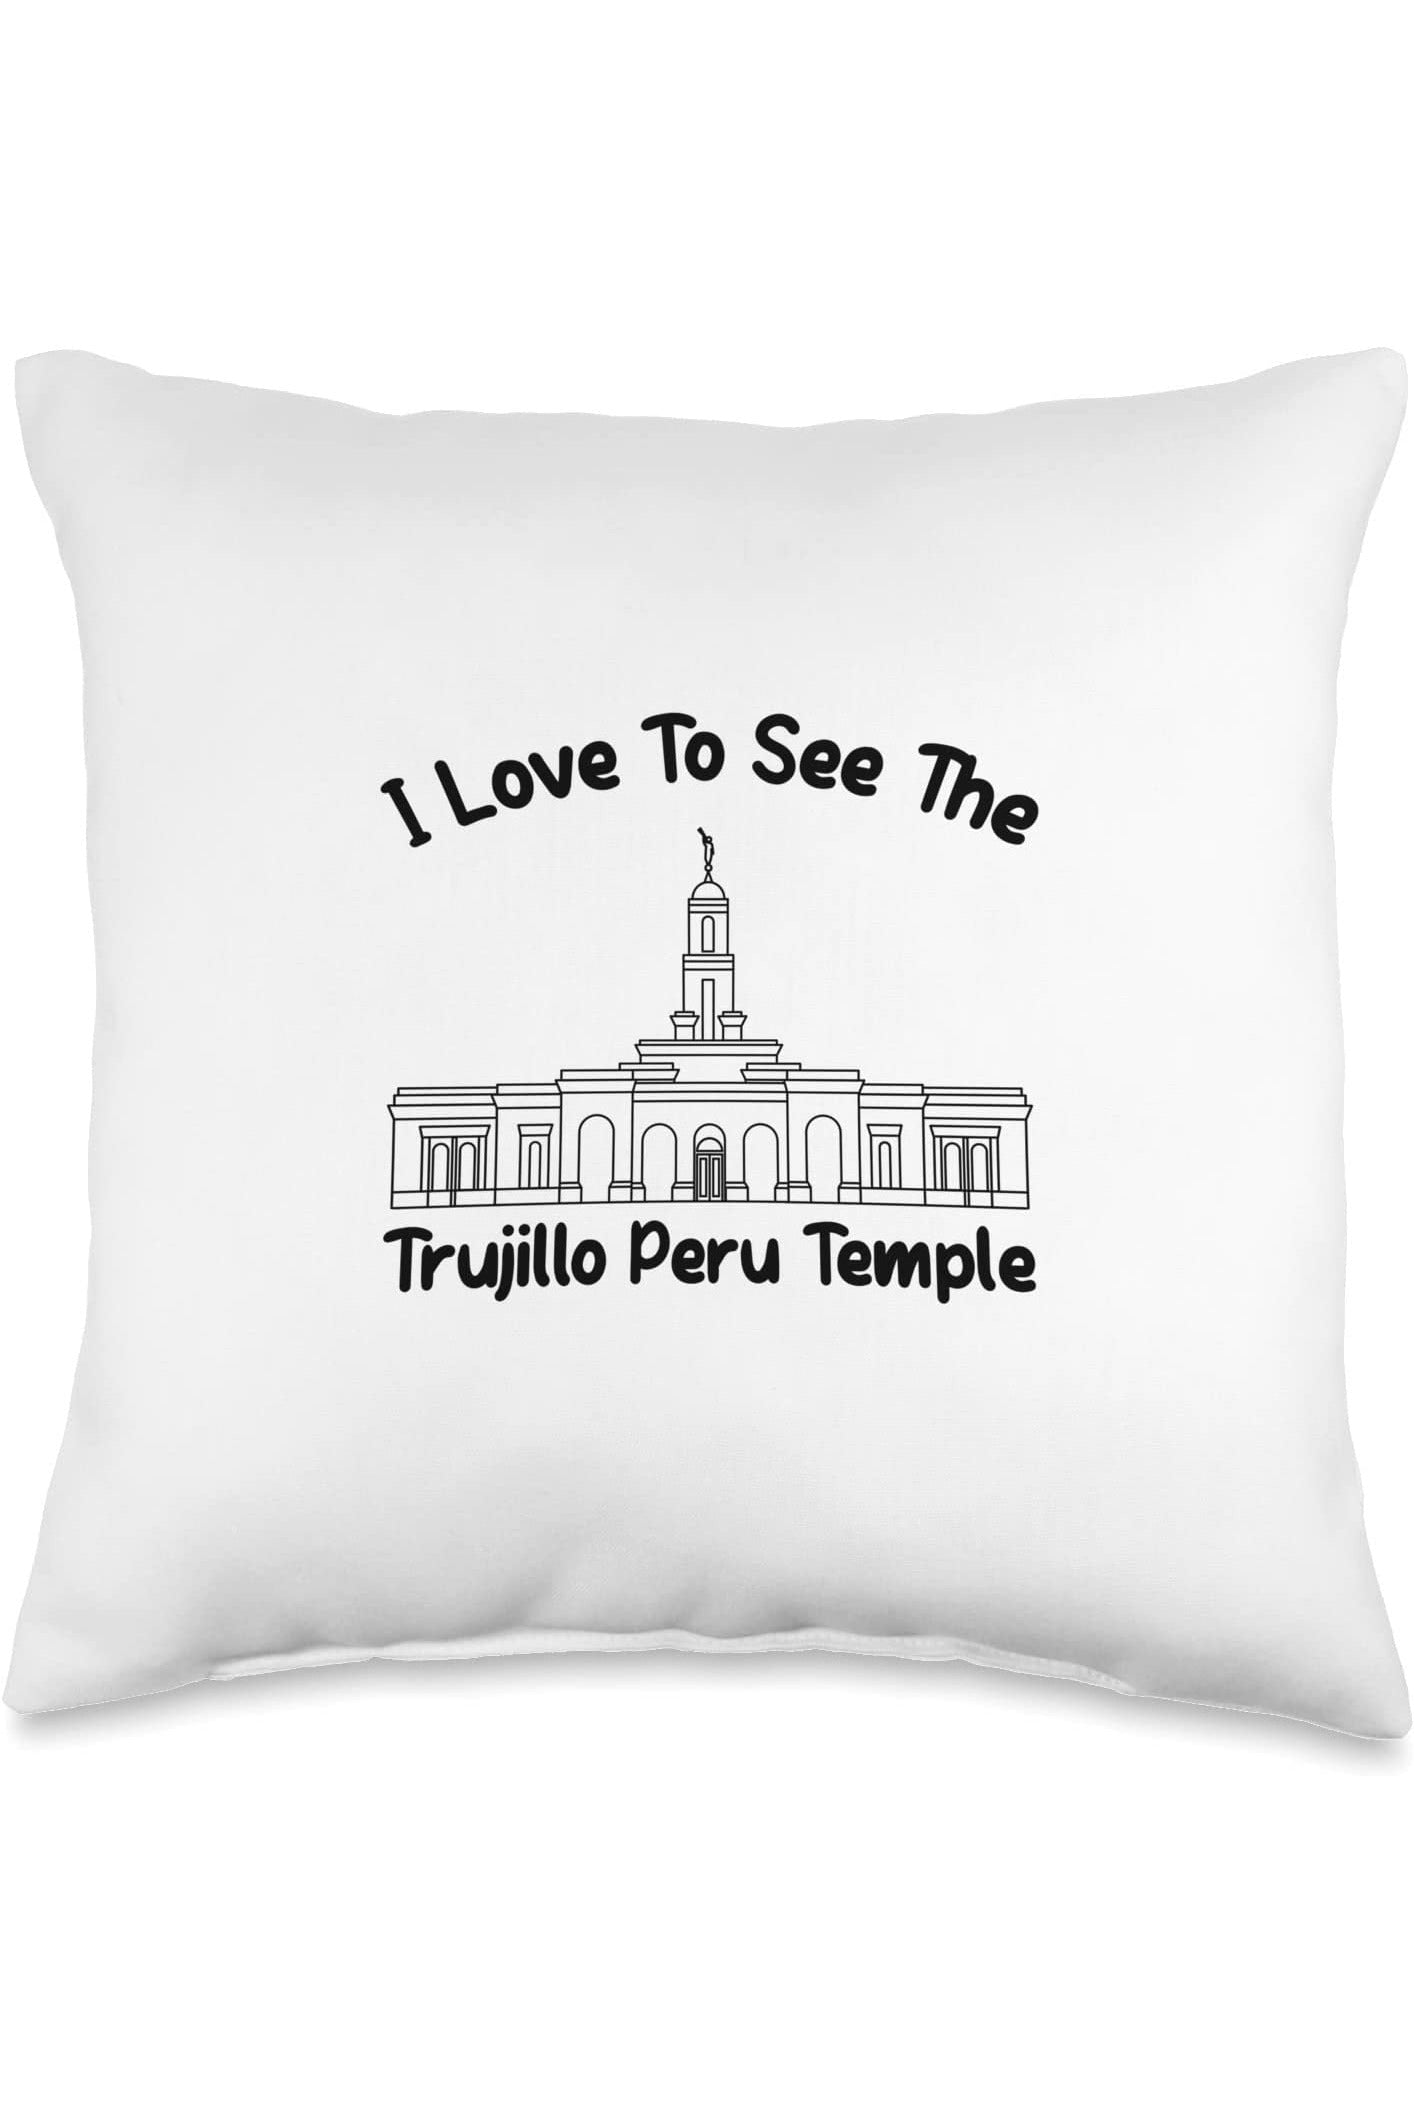 Trujillo Peru Temple Throw Pillows - Primary Style (English) US